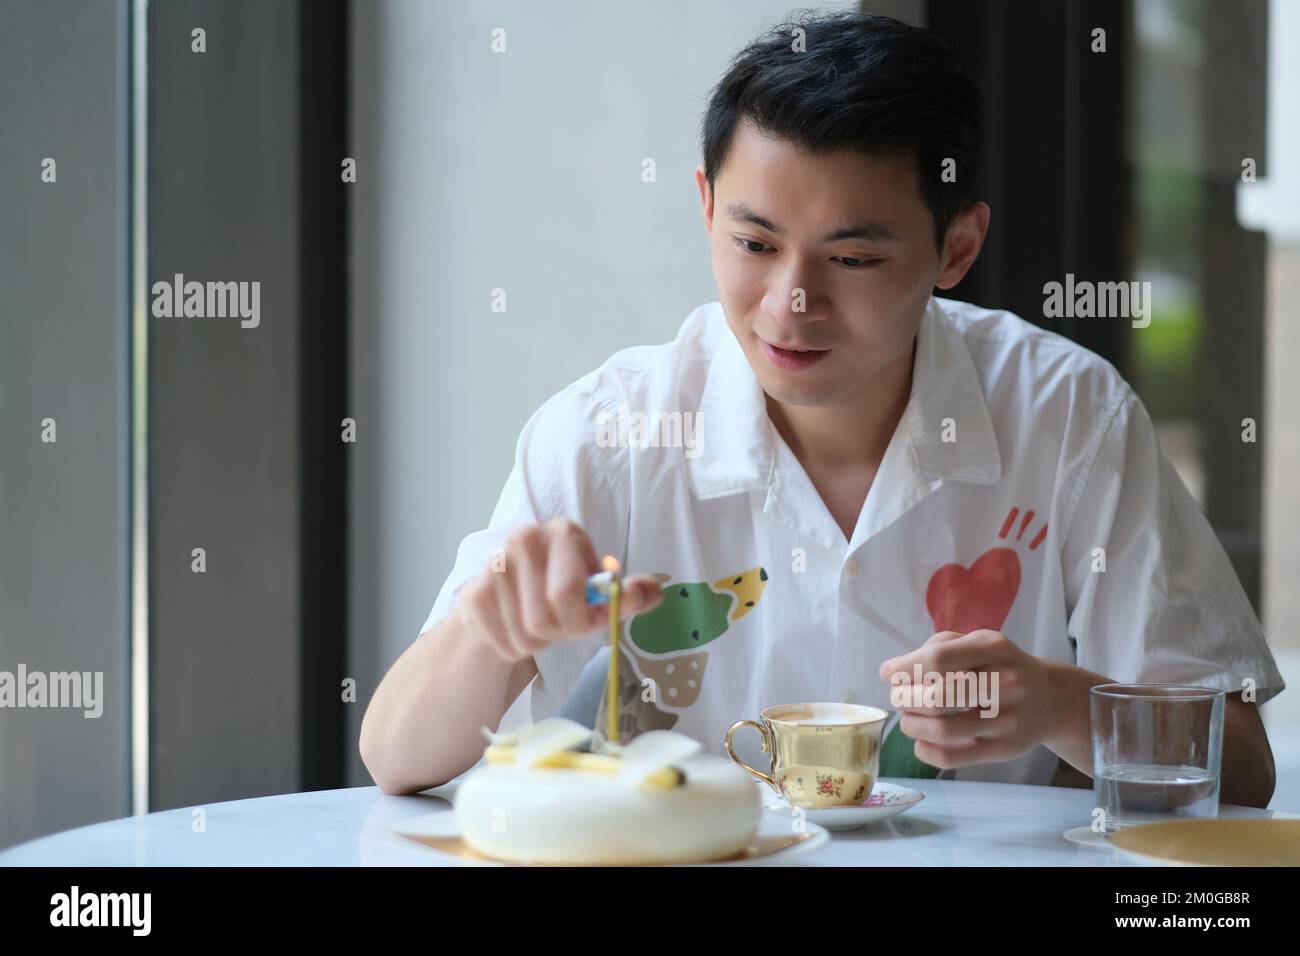 Un jeune homme asiatique allume la bougie sur un gâteau d'anniversaire Banque D'Images